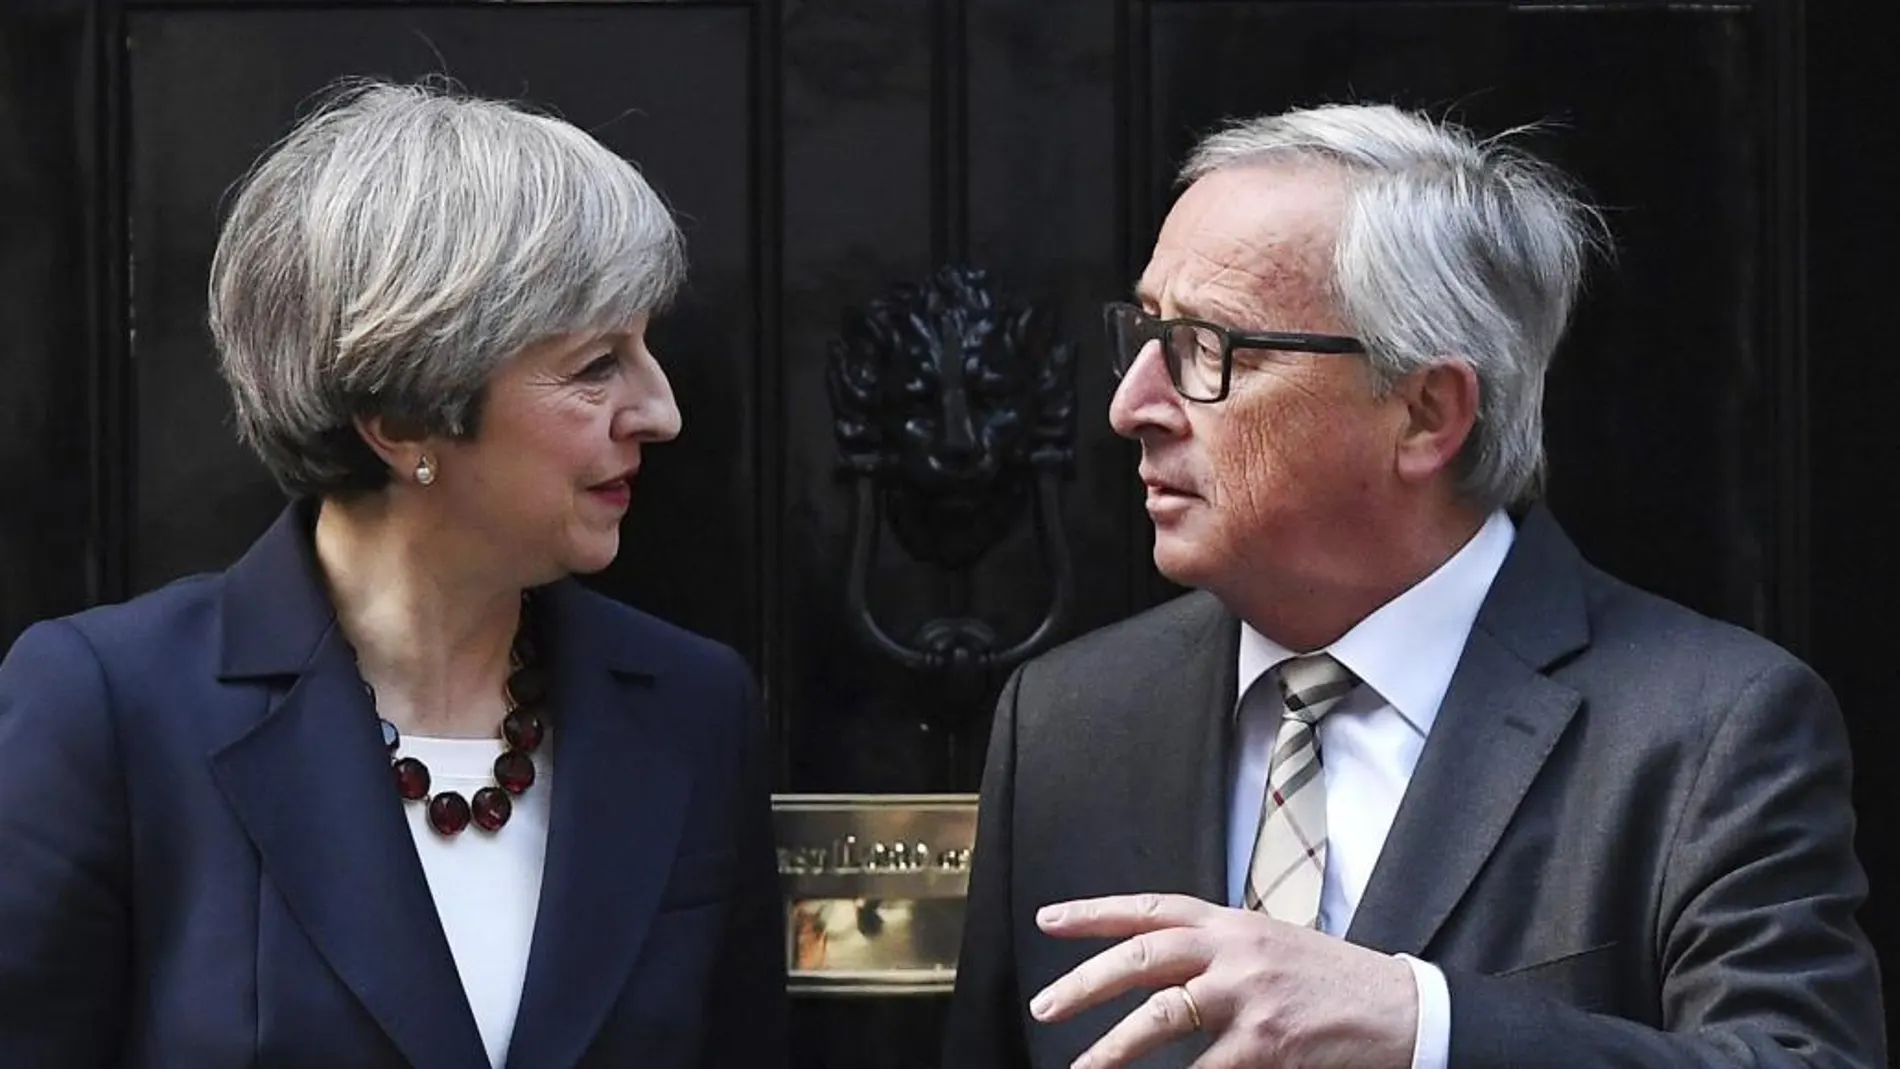 La primera ministra Theresa May junto al presidente de la Comisión Europea Jean-Claude Juncker (d) en el número 10 de Downing Street en Londres